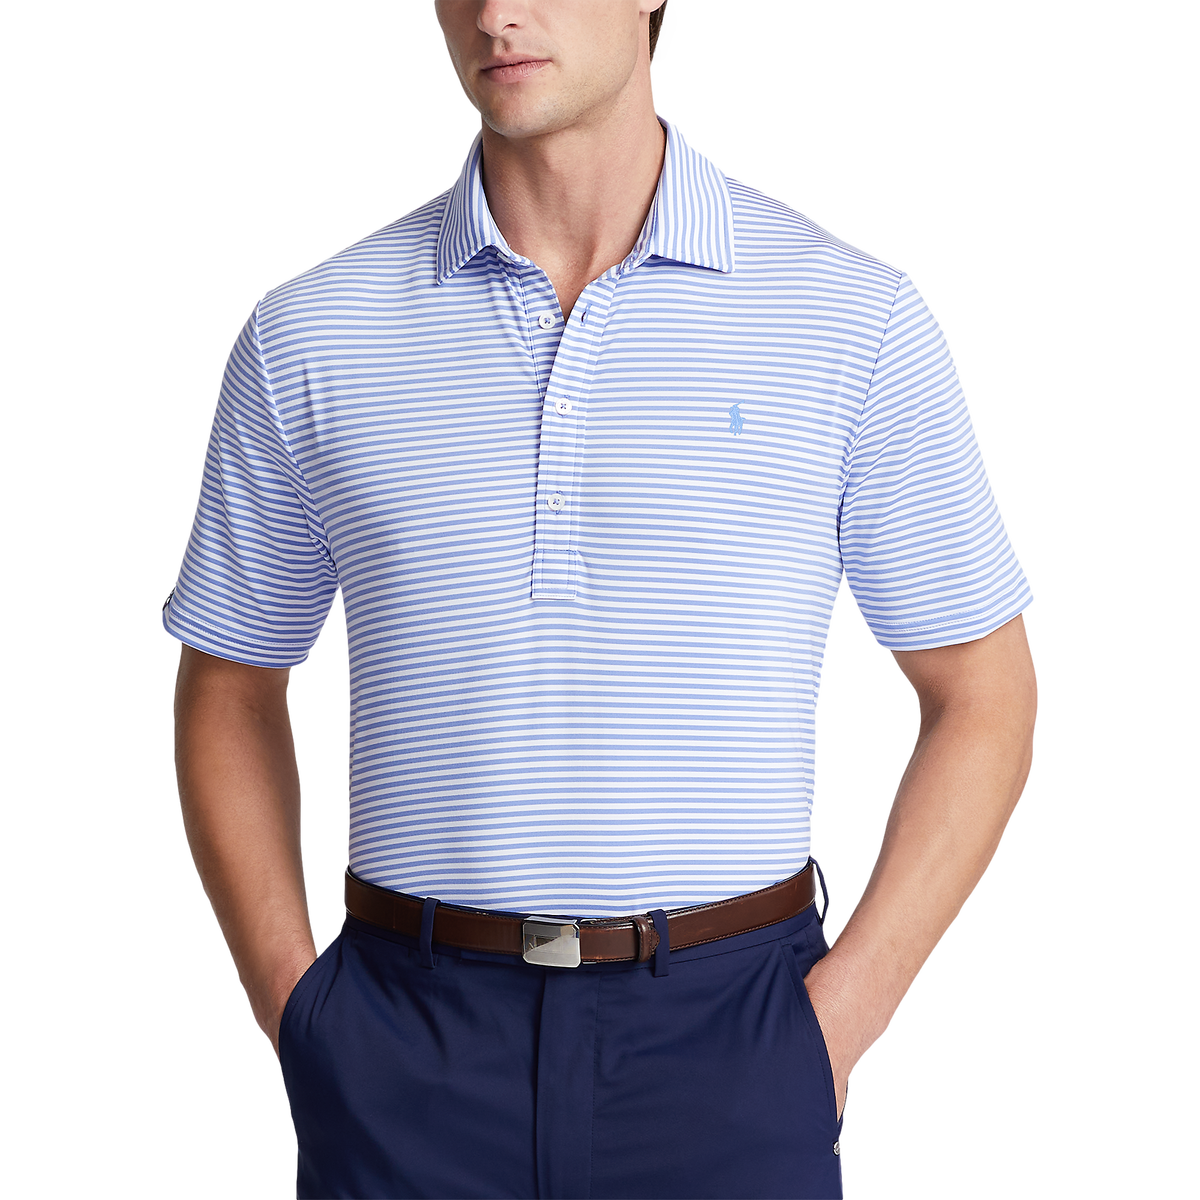 RLX Golf Performance Tour Pique Striped Polo Shirt | PGA TOUR Superstore